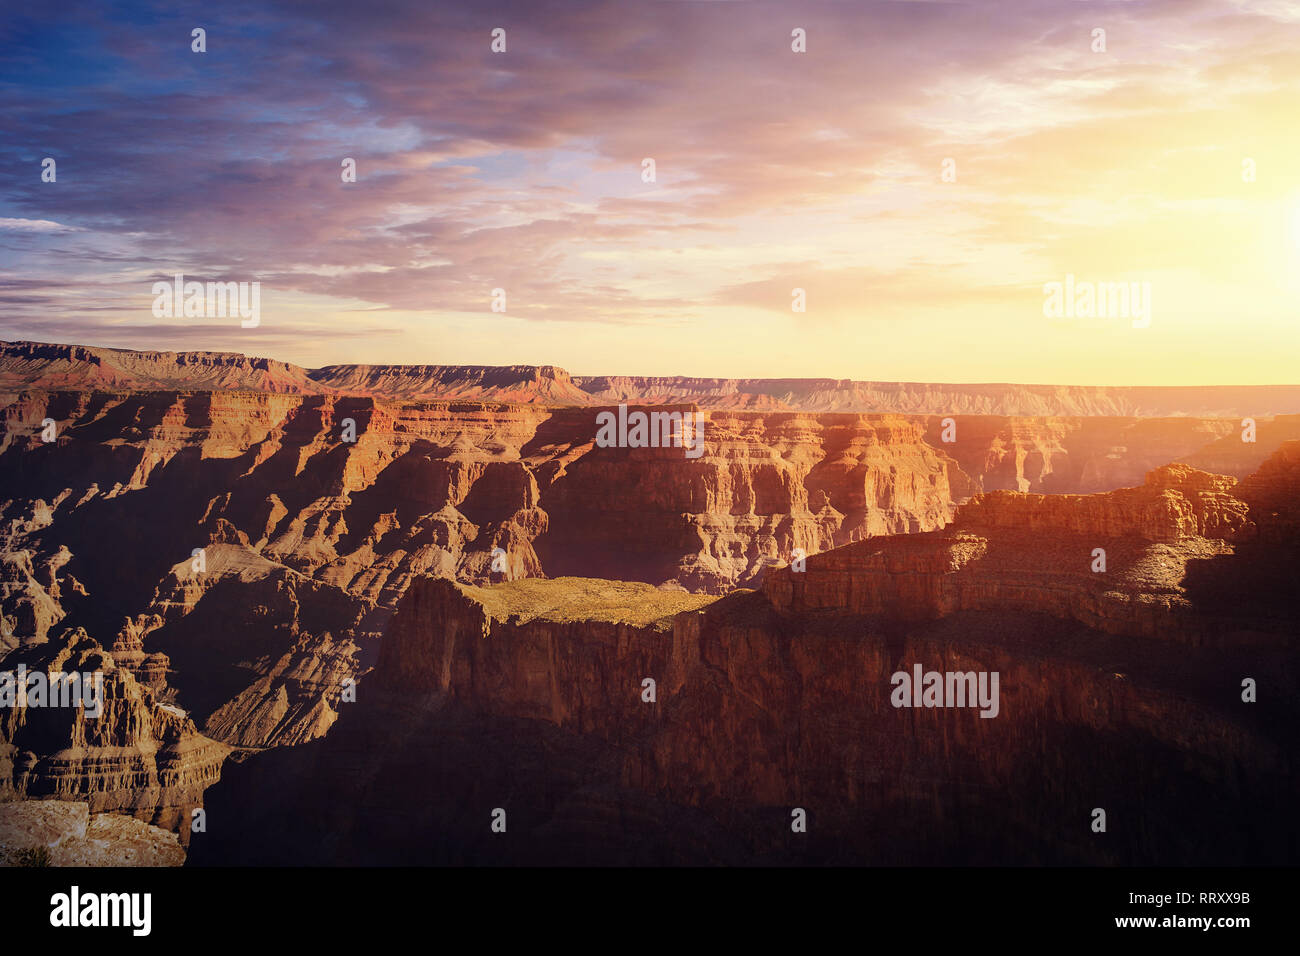 Grand Canyon West Rim at sunset - Arizona, USA Stock Photo